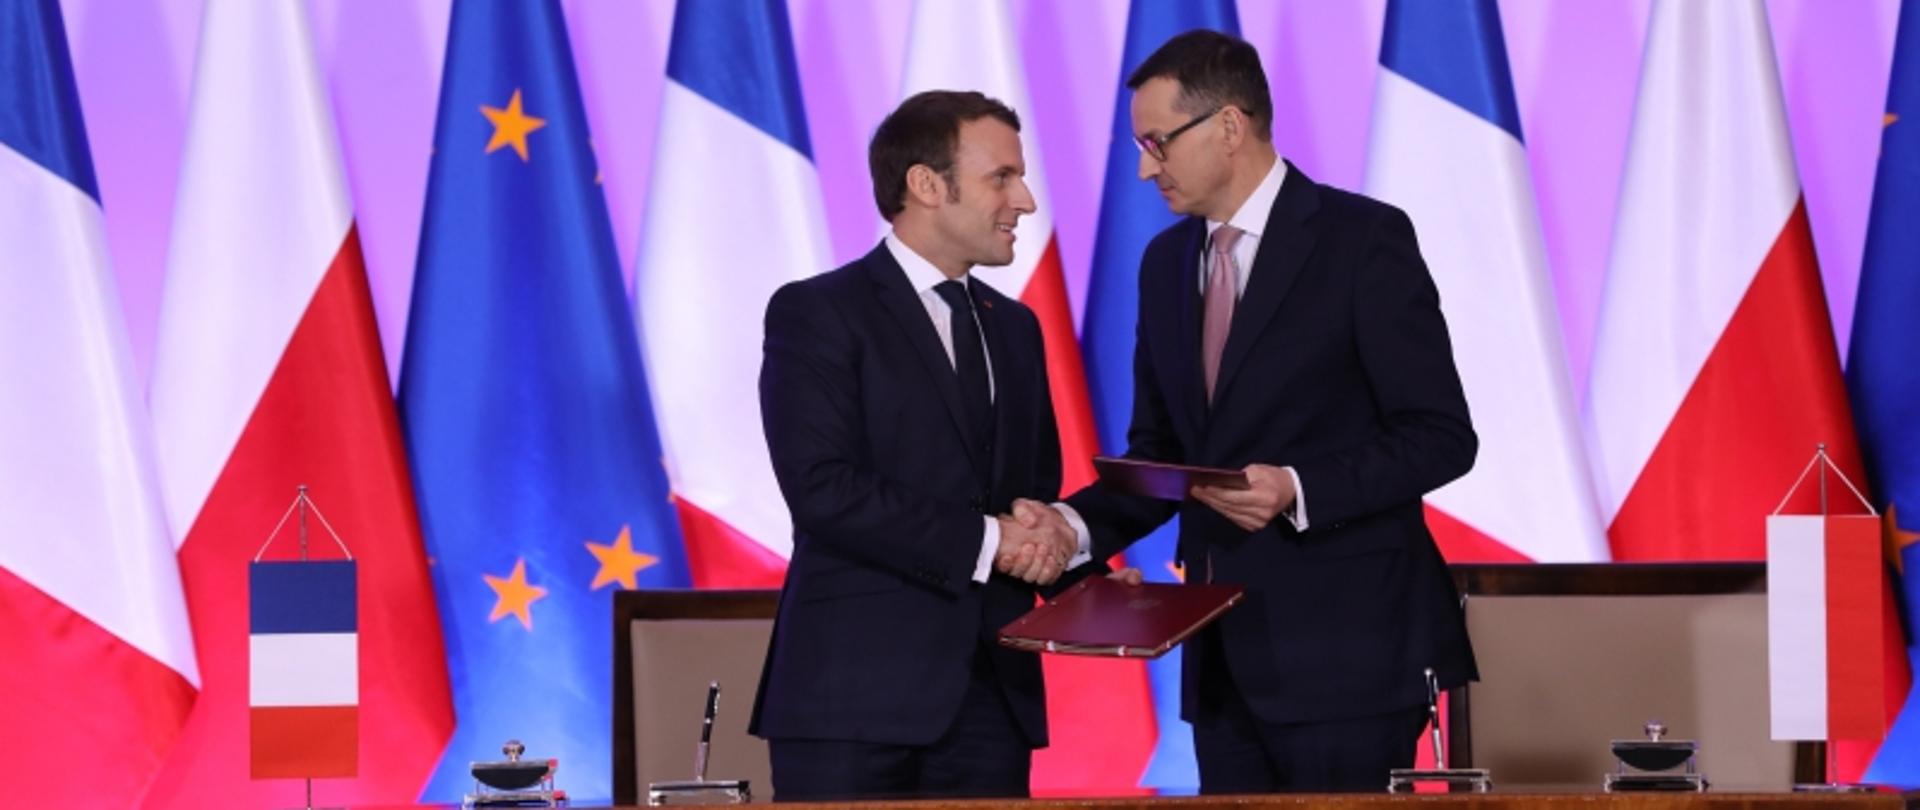 Podpisanie deklaracji polsko-francuskiej. 